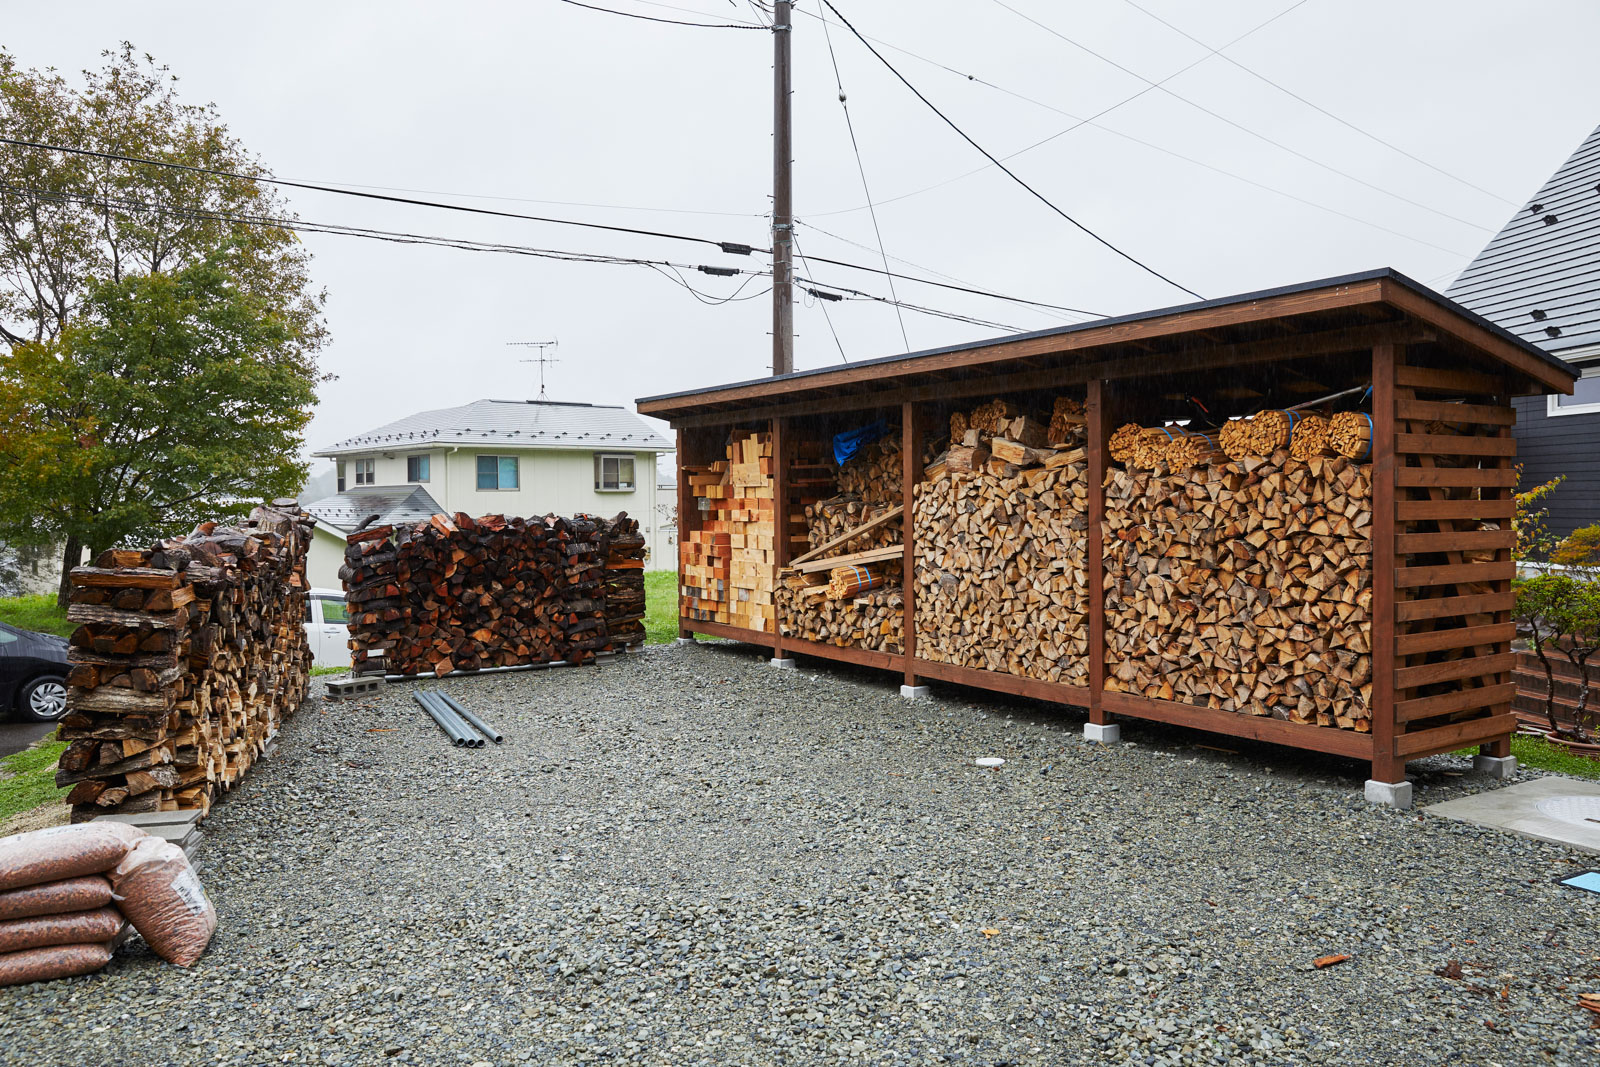 薪棚は佐善工務店がAさんの要望を受けて製作。陽当たりや風向きを考慮しつつ、1年分の薪を収納できる大きさを備えた